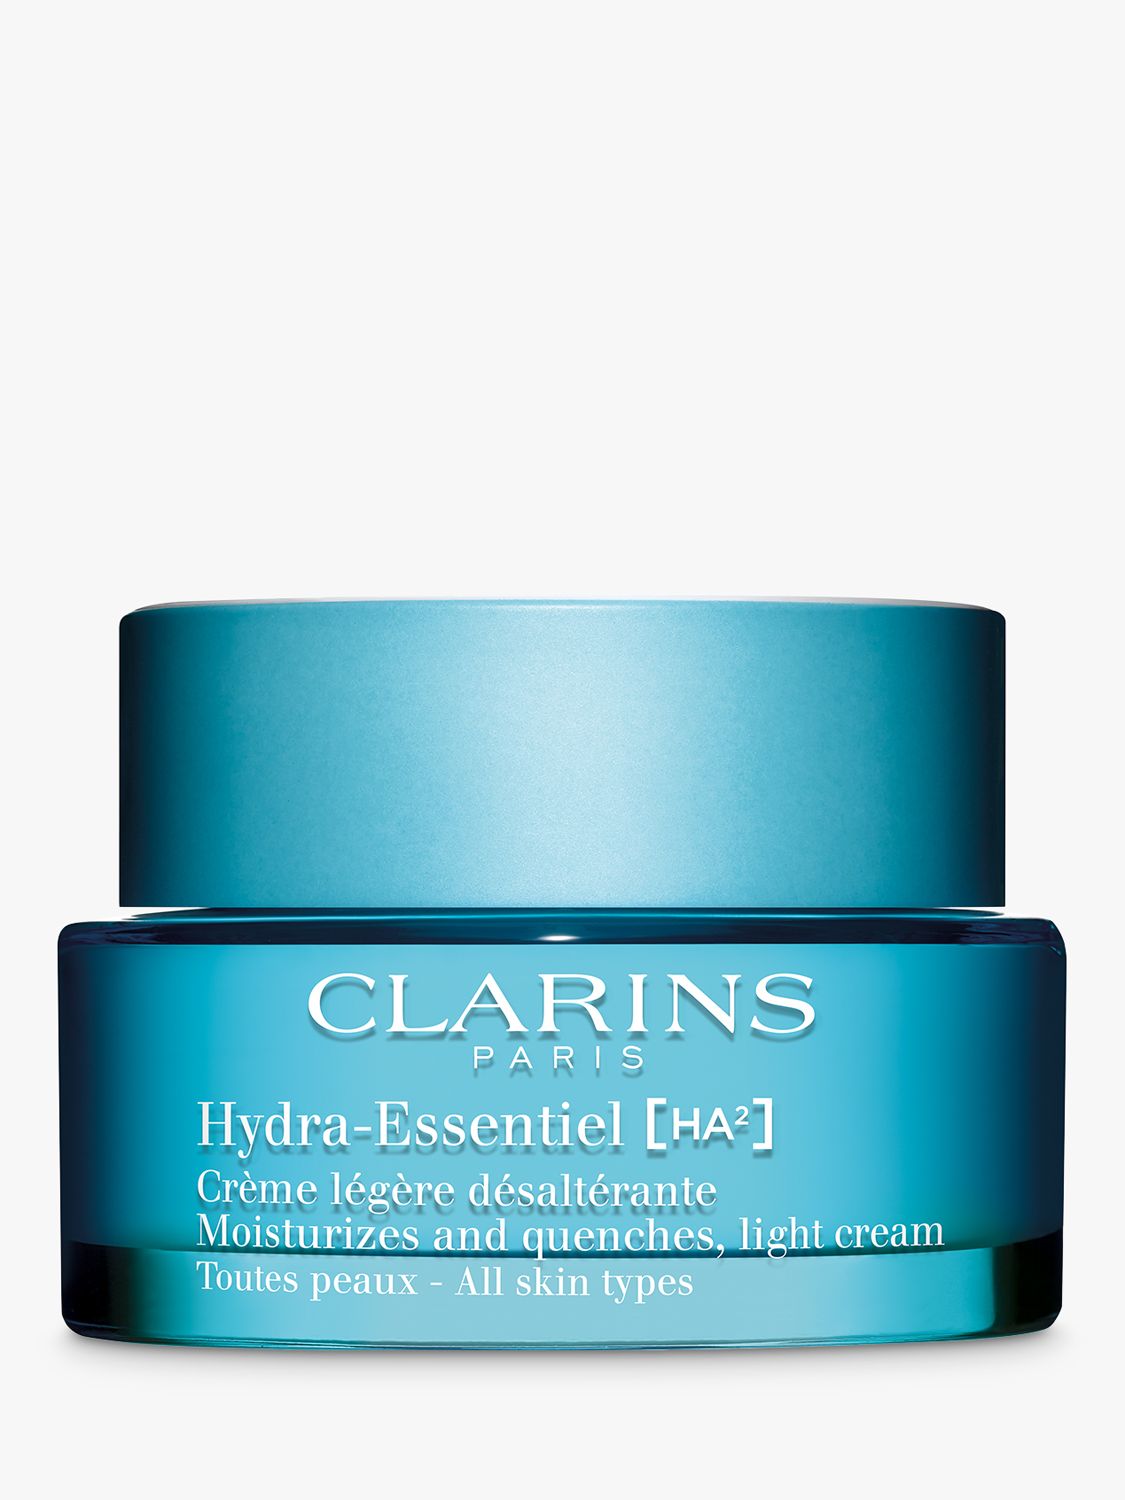 Clarins Hydra-Essentiel Light Cream, 50ml 1